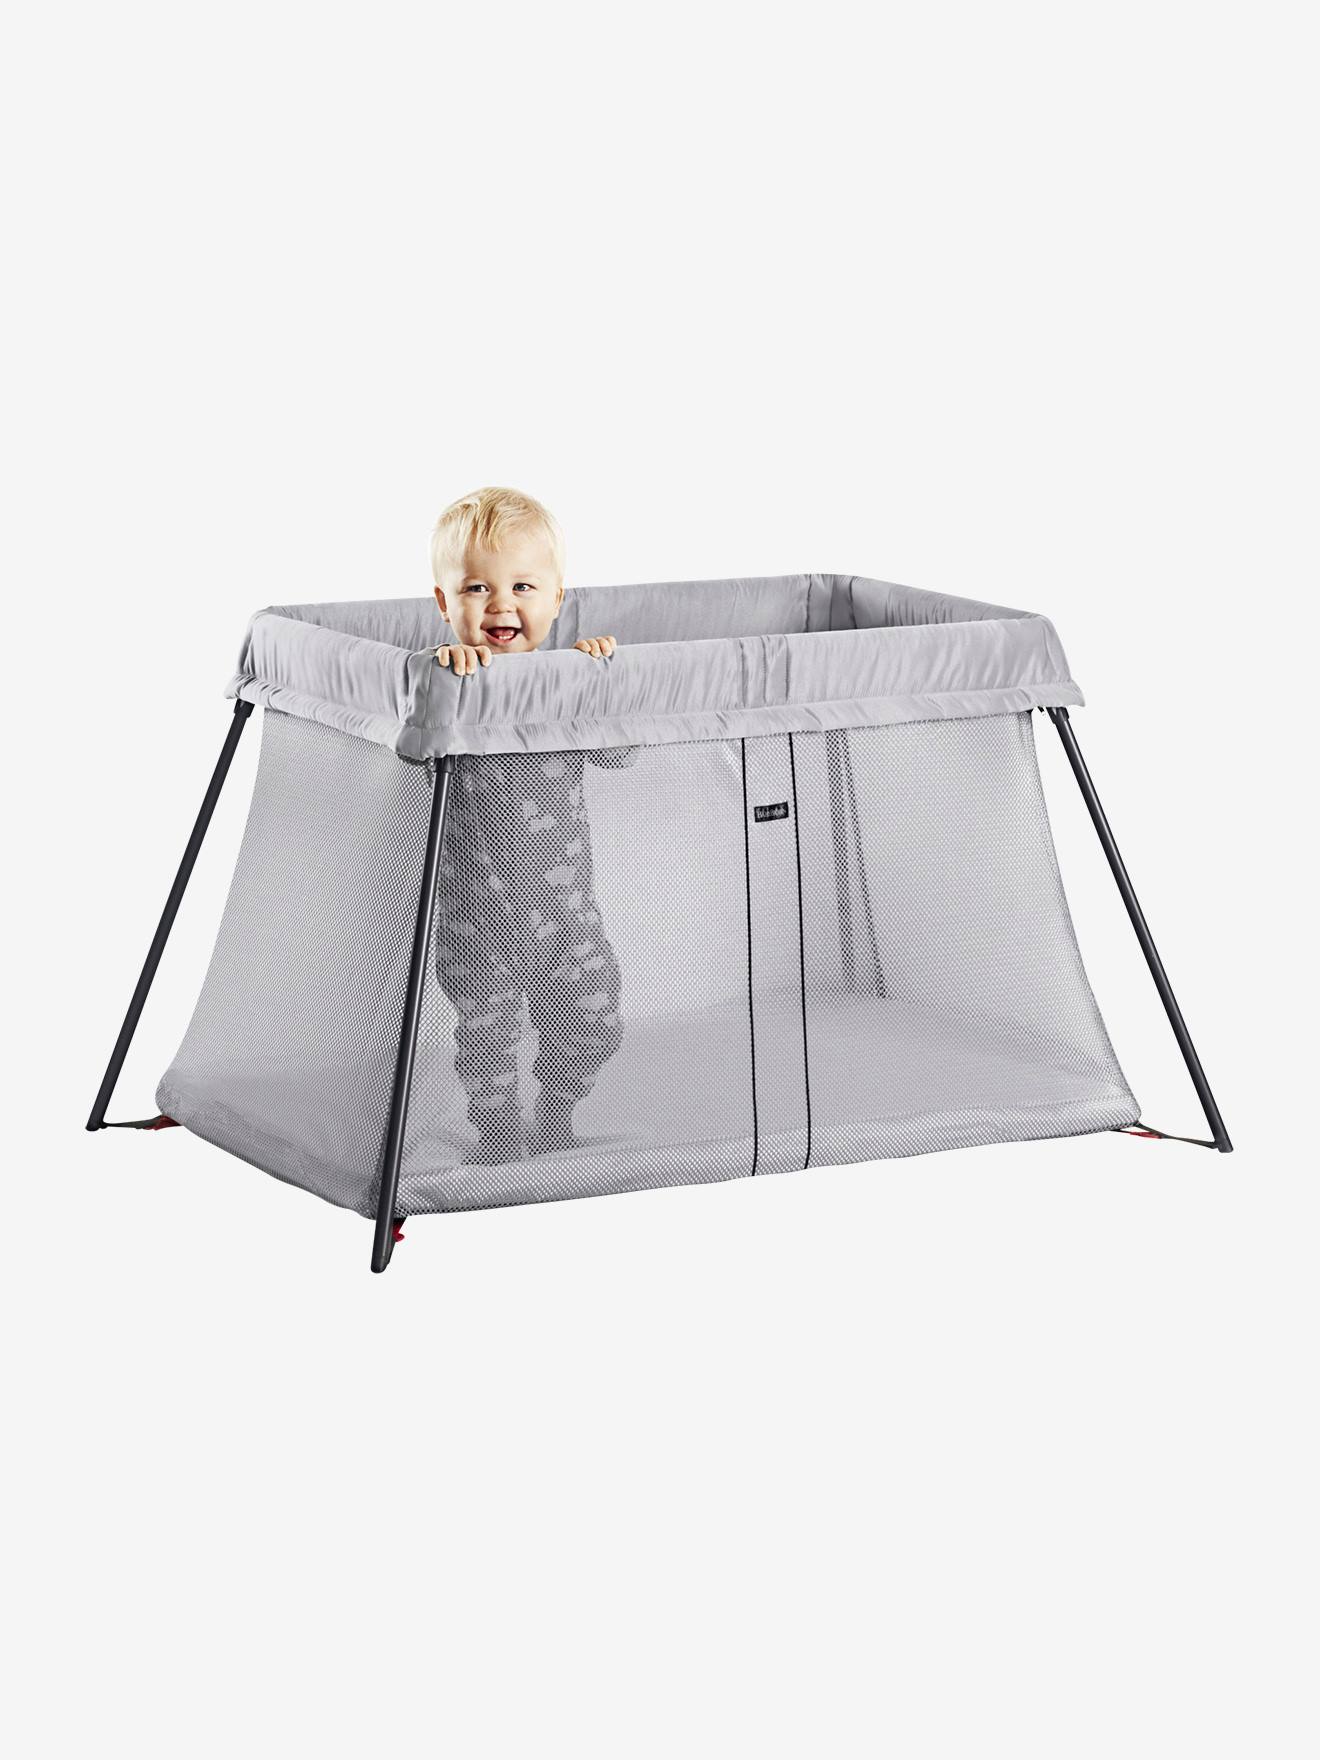 Le lit parapluie Light de Babybjorn chez les Floutch  Maman Floutch - Blog  pour mamans, parents de jumeaux Clermont ferrand